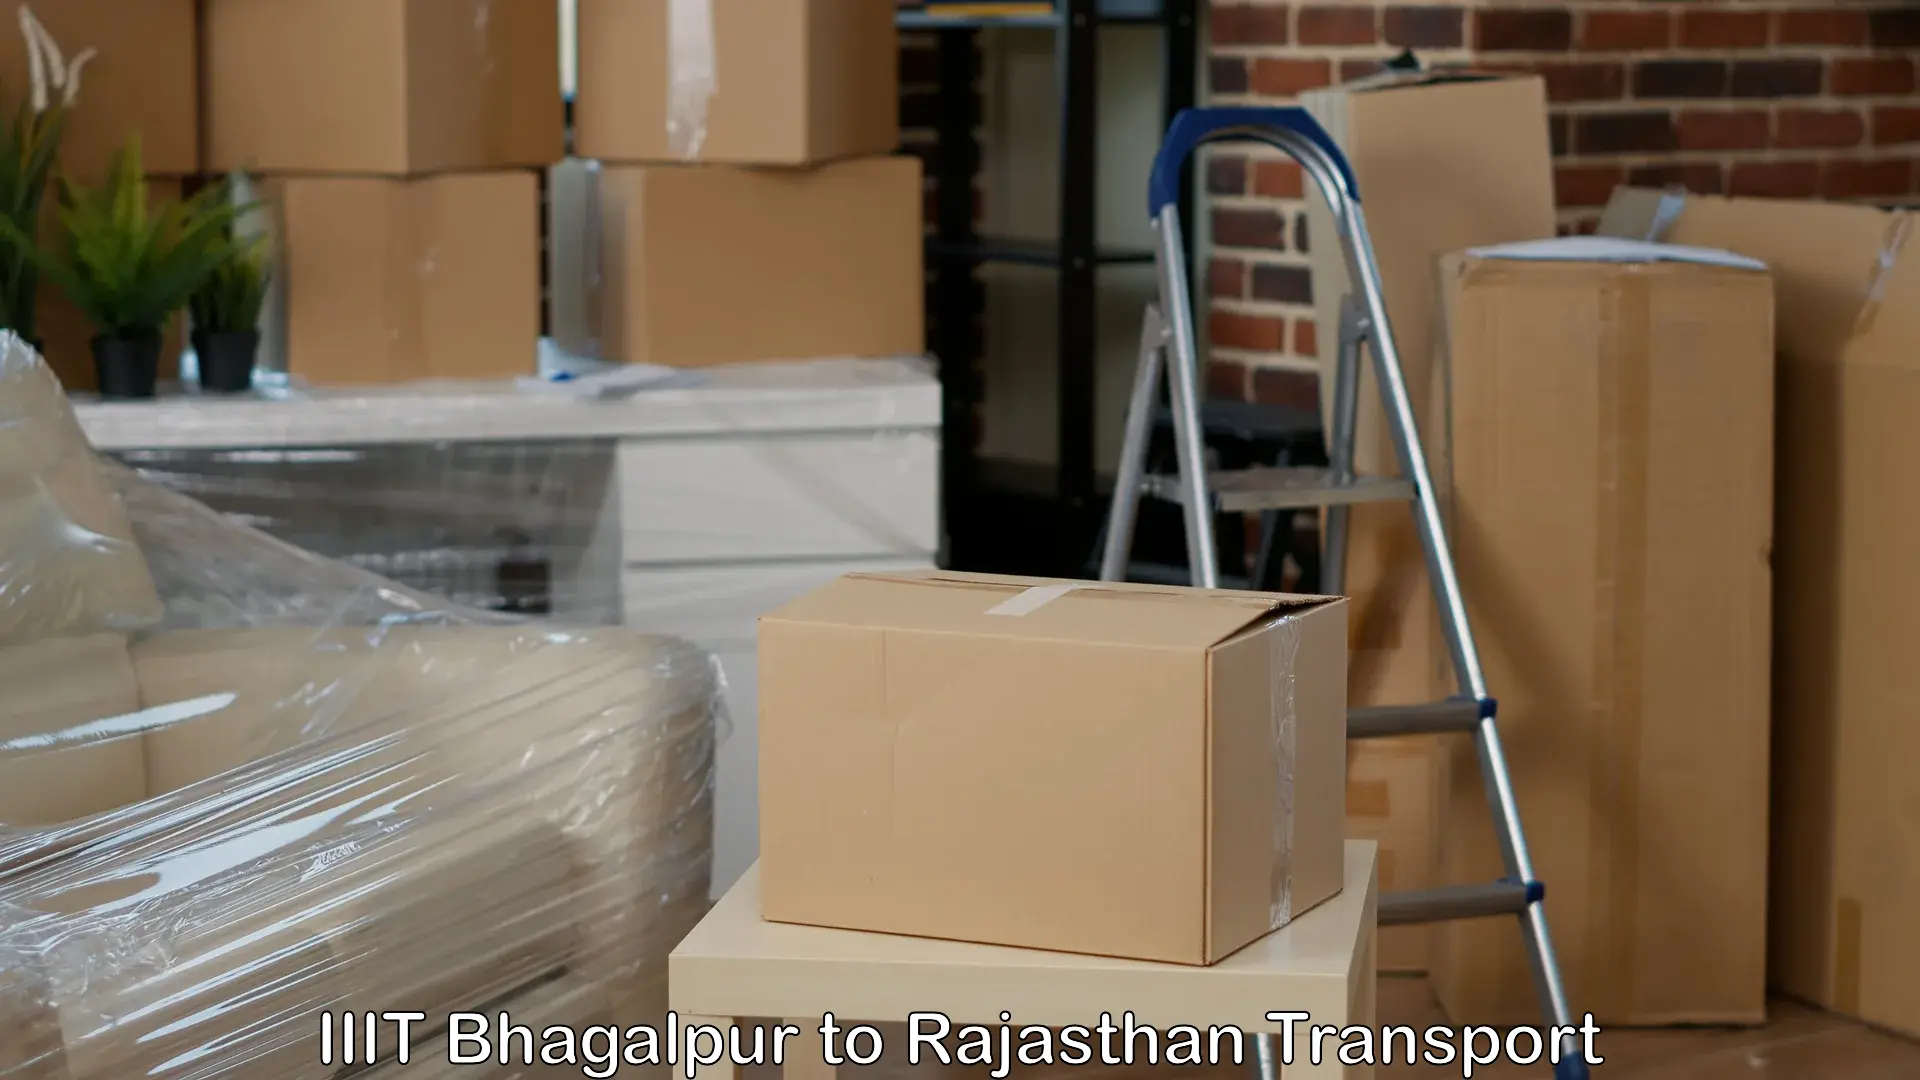 Container transport service IIIT Bhagalpur to Jaisalmer